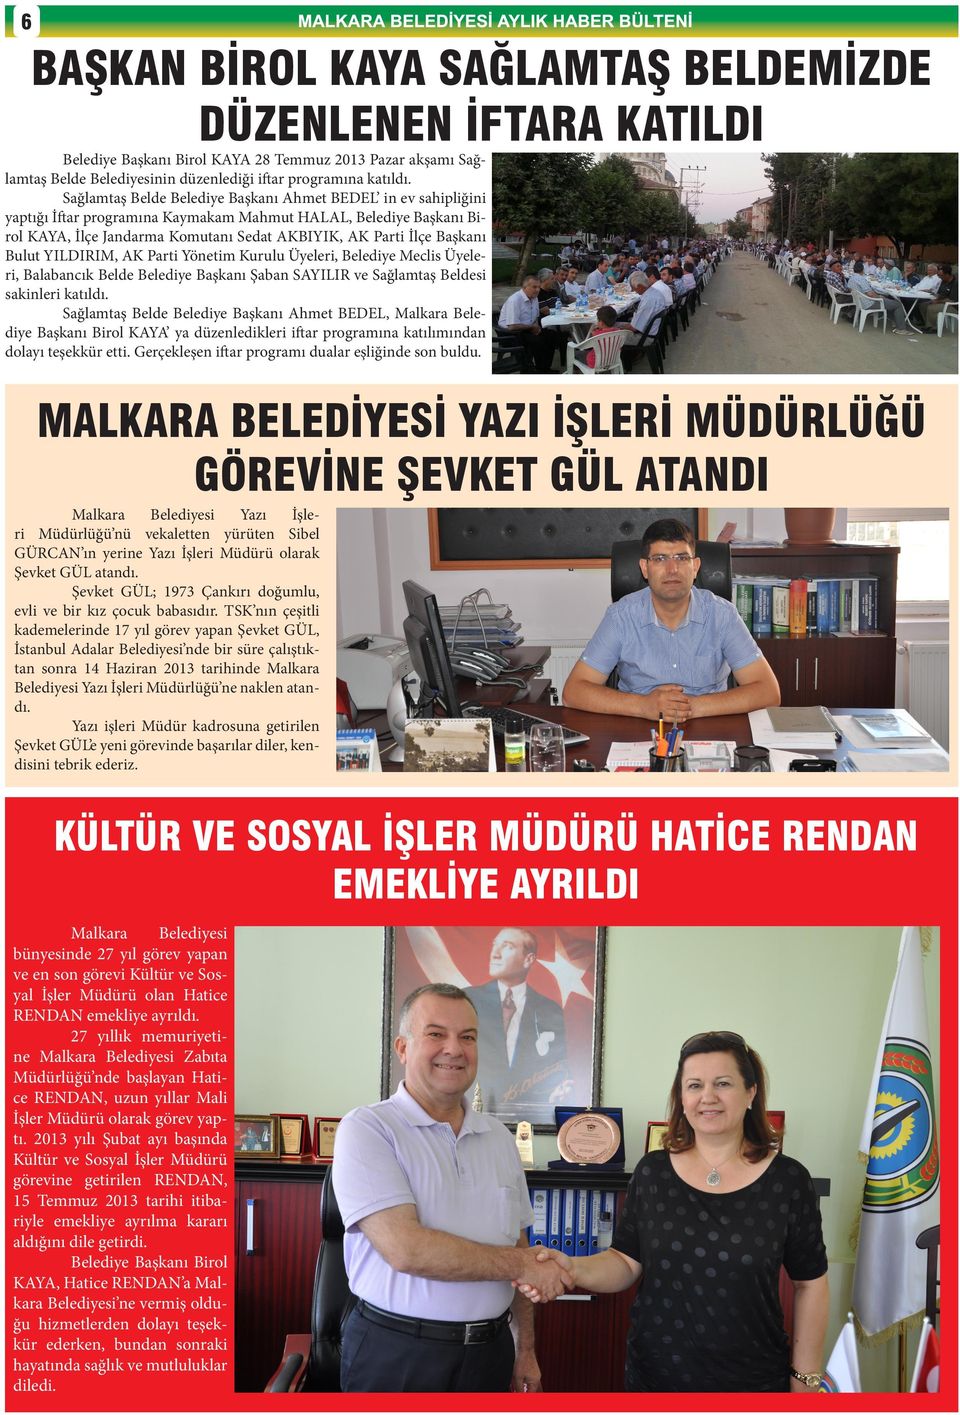 Bulut YILDIRIM, AK Parti Yönetim Kurulu Üyeleri, Belediye Meclis Üyeleri, Balabancık Belde Belediye Başkanı Şaban SAYILIR ve Sağlamtaş Beldesi sakinleri katıldı.